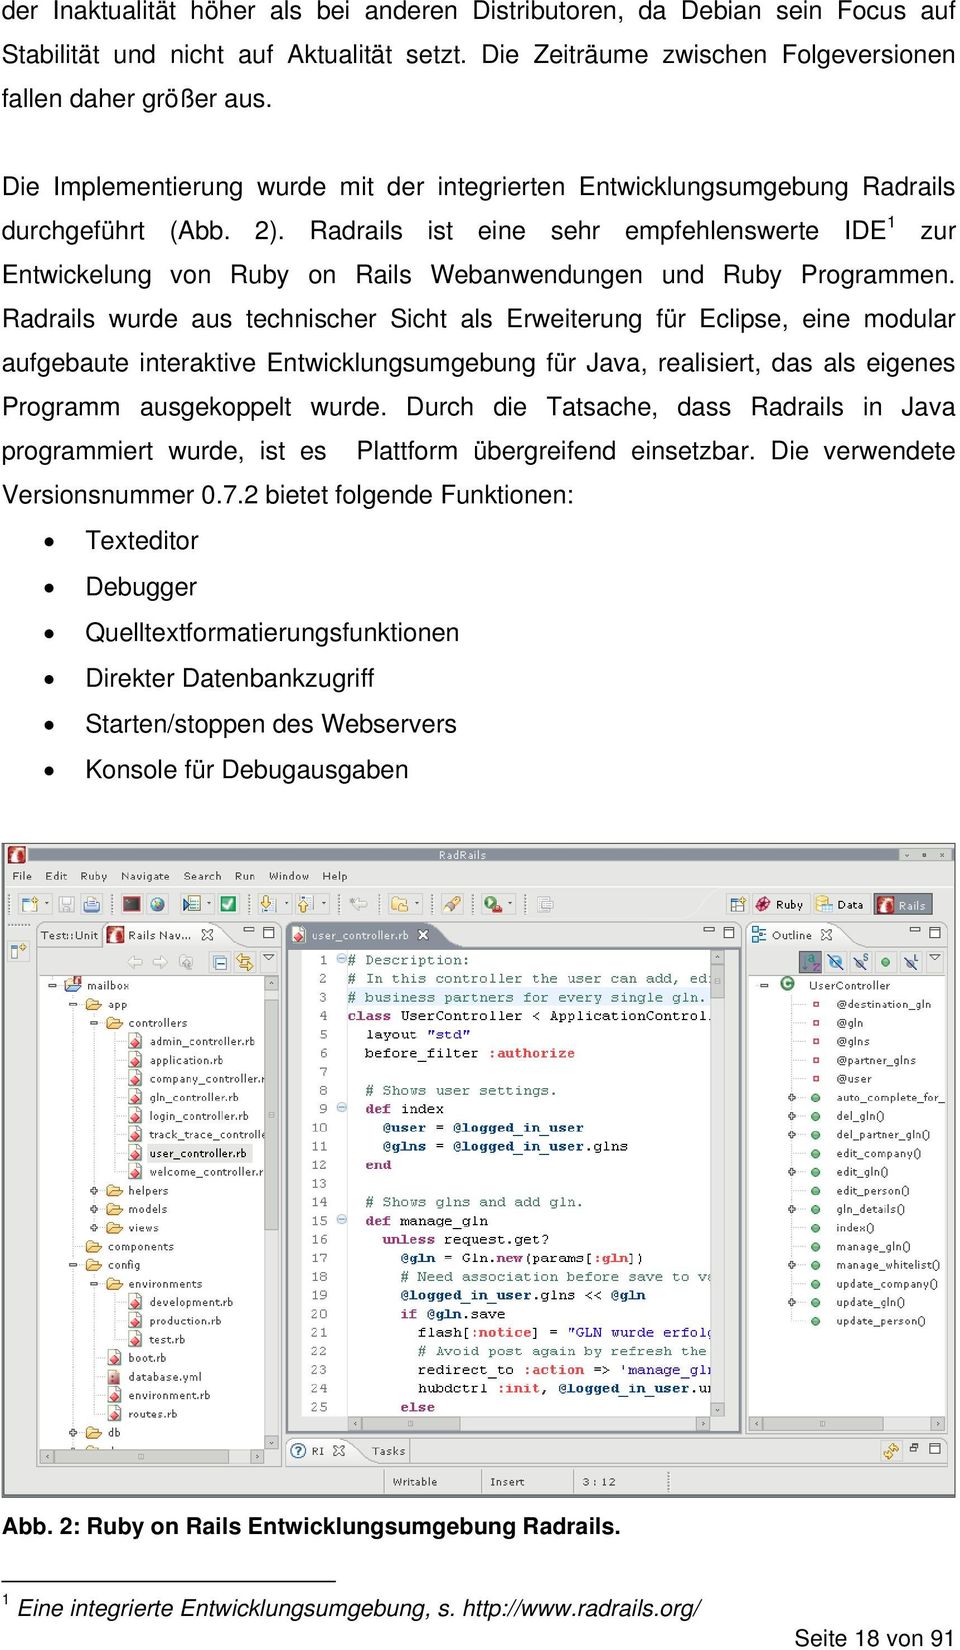 Radrails ist eine sehr empfehlenswerte IDE 1 zur Entwickelung von Ruby on Rails Webanwendungen und Ruby Programmen.